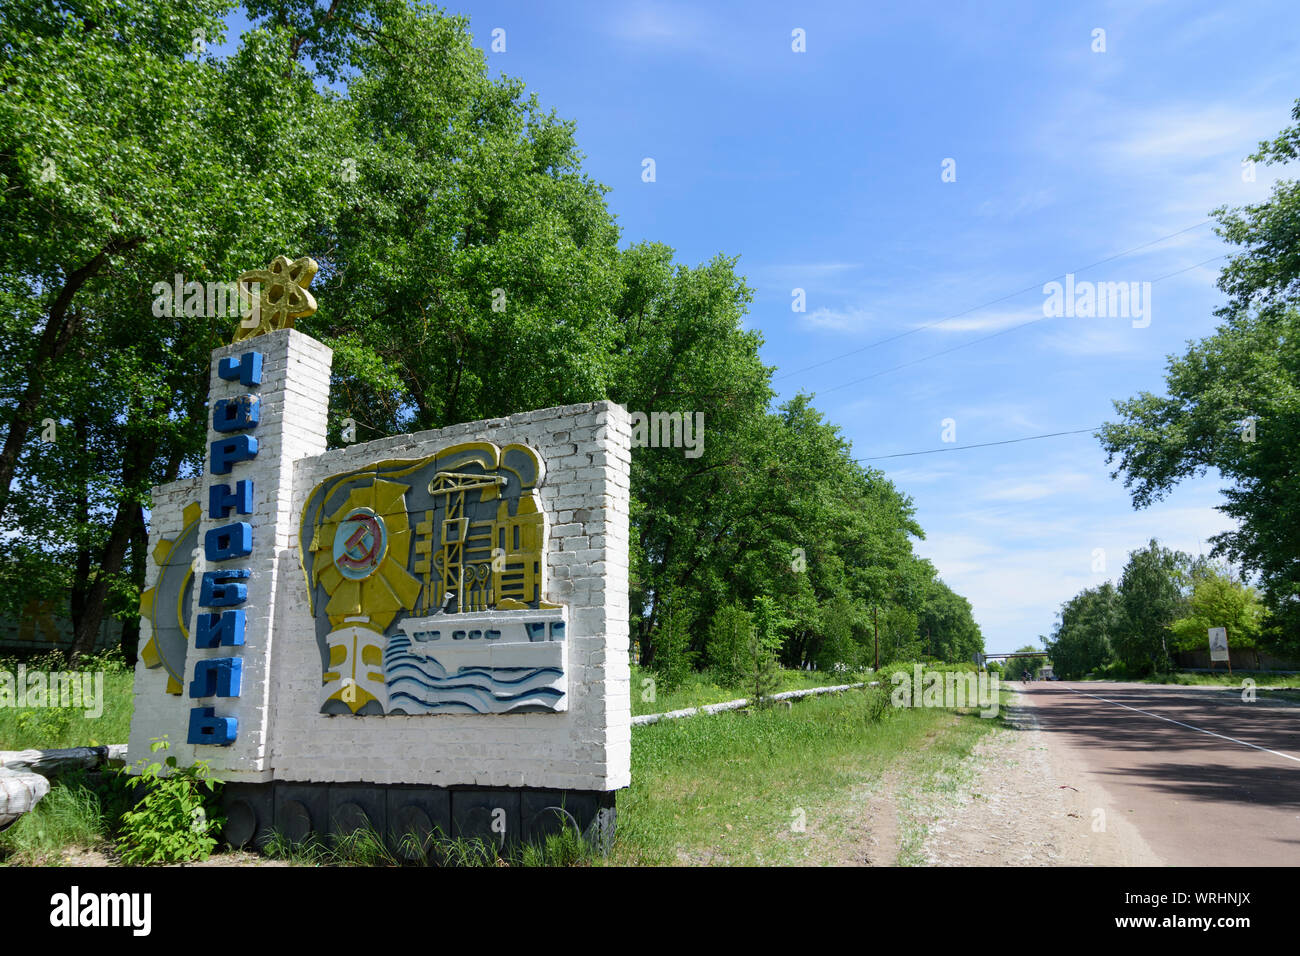 Tschernobyl (Tschernobyl): Tschernobyl Willkommen Anmelden Tschernobyl (Tschernobyl) Ausschluss Zone, Kiev Oblast, Ukraine Stockfoto